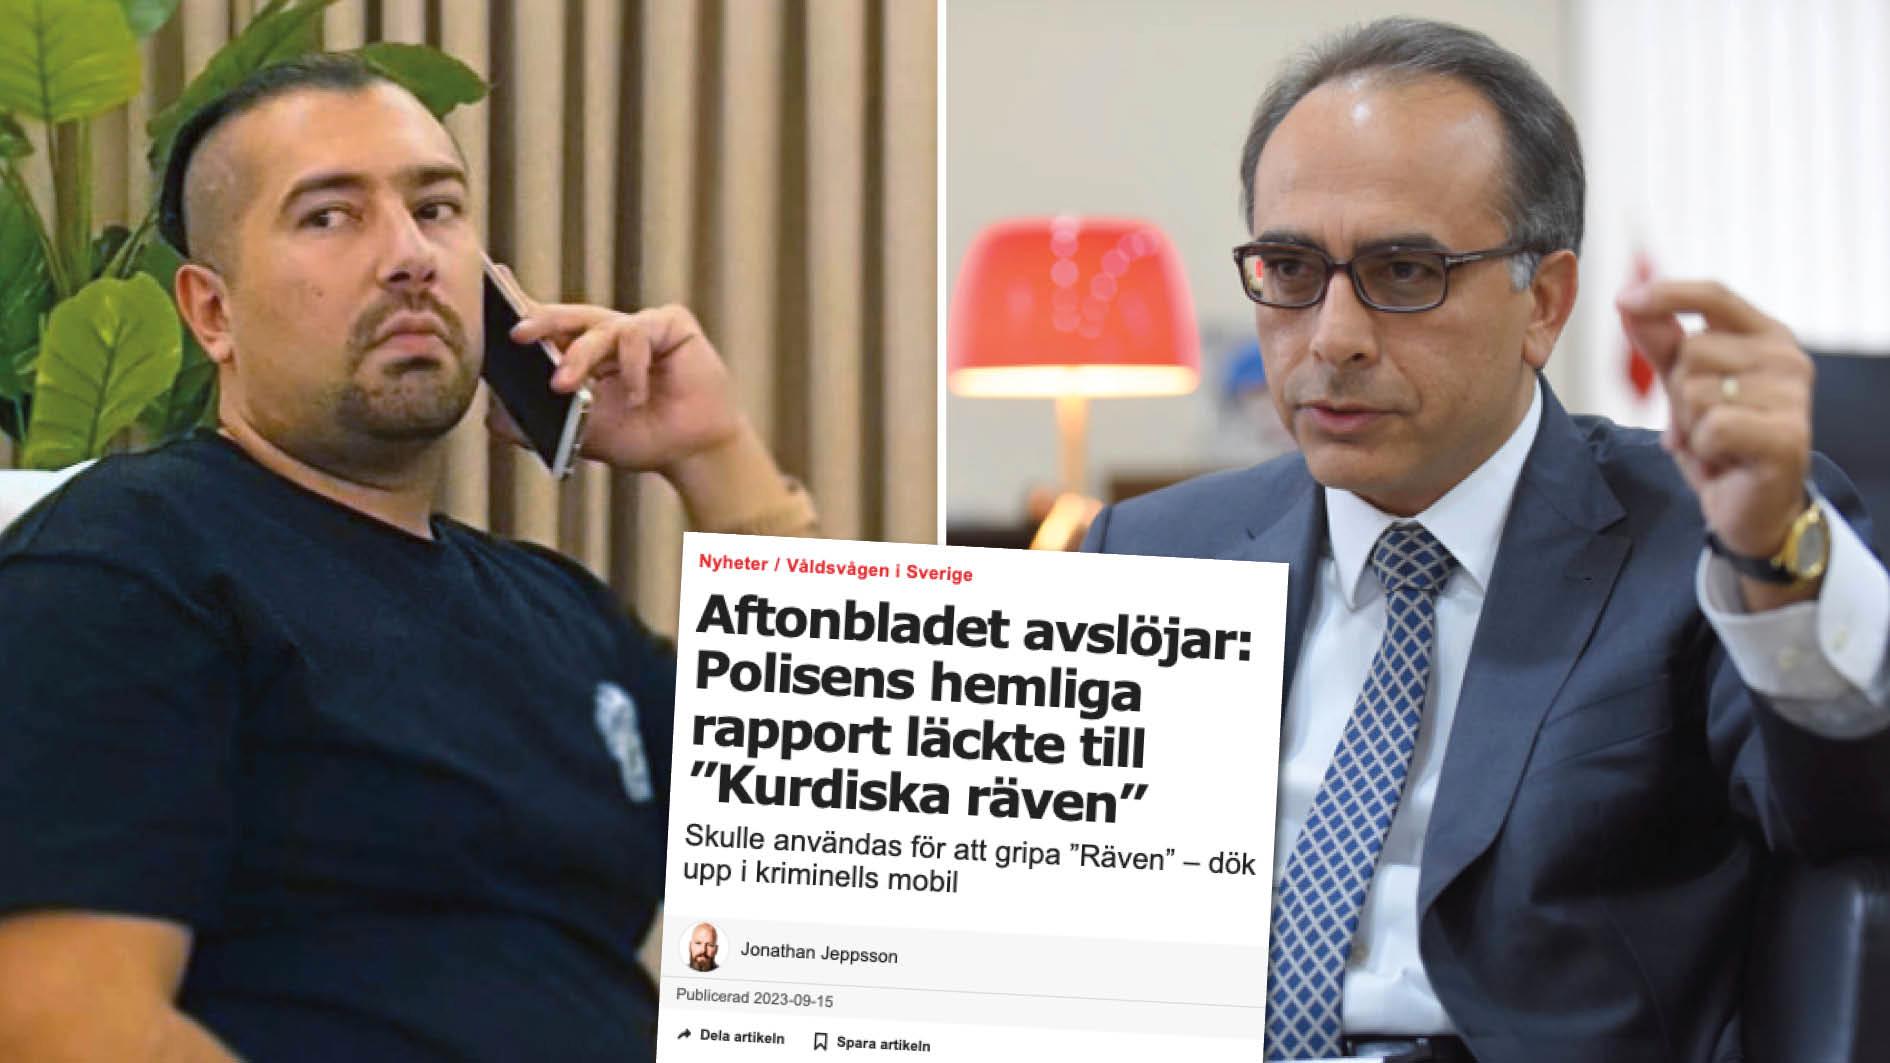 Det påstods nyligen i Aftonbladet att en svensk polisrapport om Foxtrot-nätverkets ledare Rawa Majid läckte till honom via turkiska diplomater och myndigheter. Om det har skett en läcka i Turkiet kommer vi naturligtvis att ta itu med det, skriver Yönet Can Tezel, Turkiets ambassadör i Sverige.